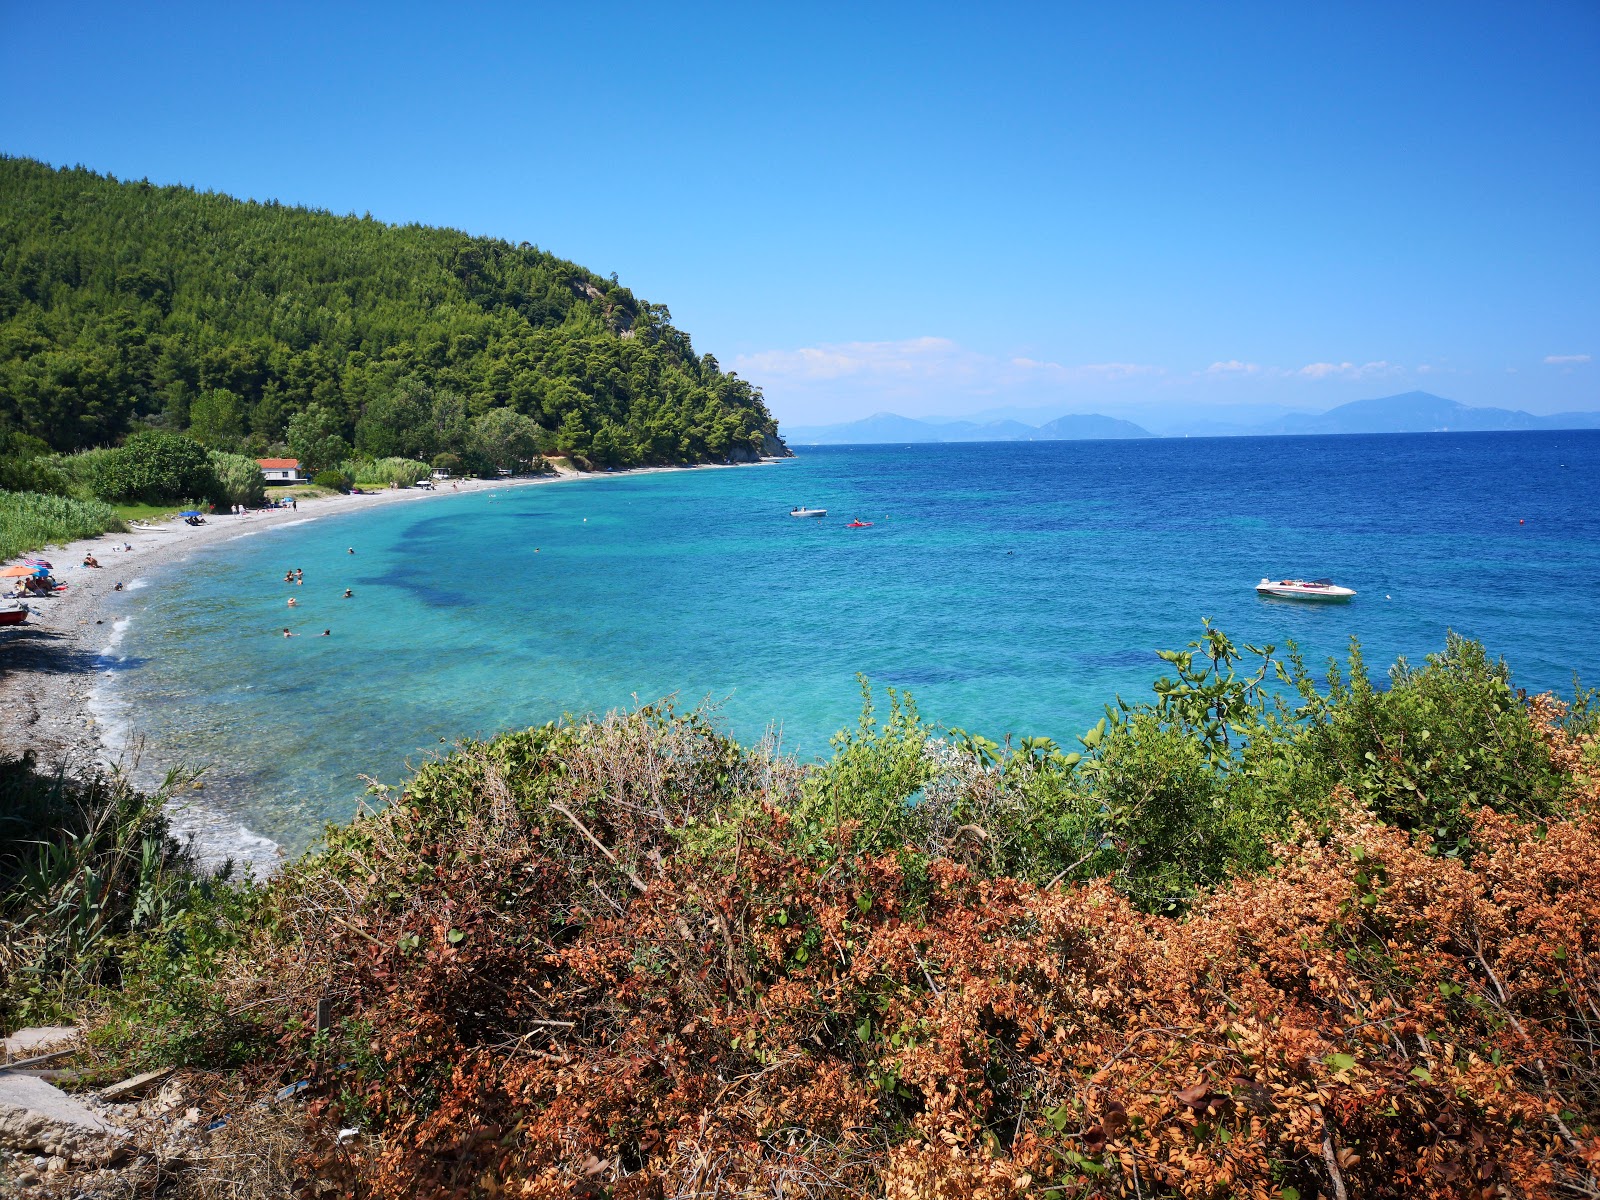 Foto af Koutsoupri beach - populært sted blandt afslapningskendere